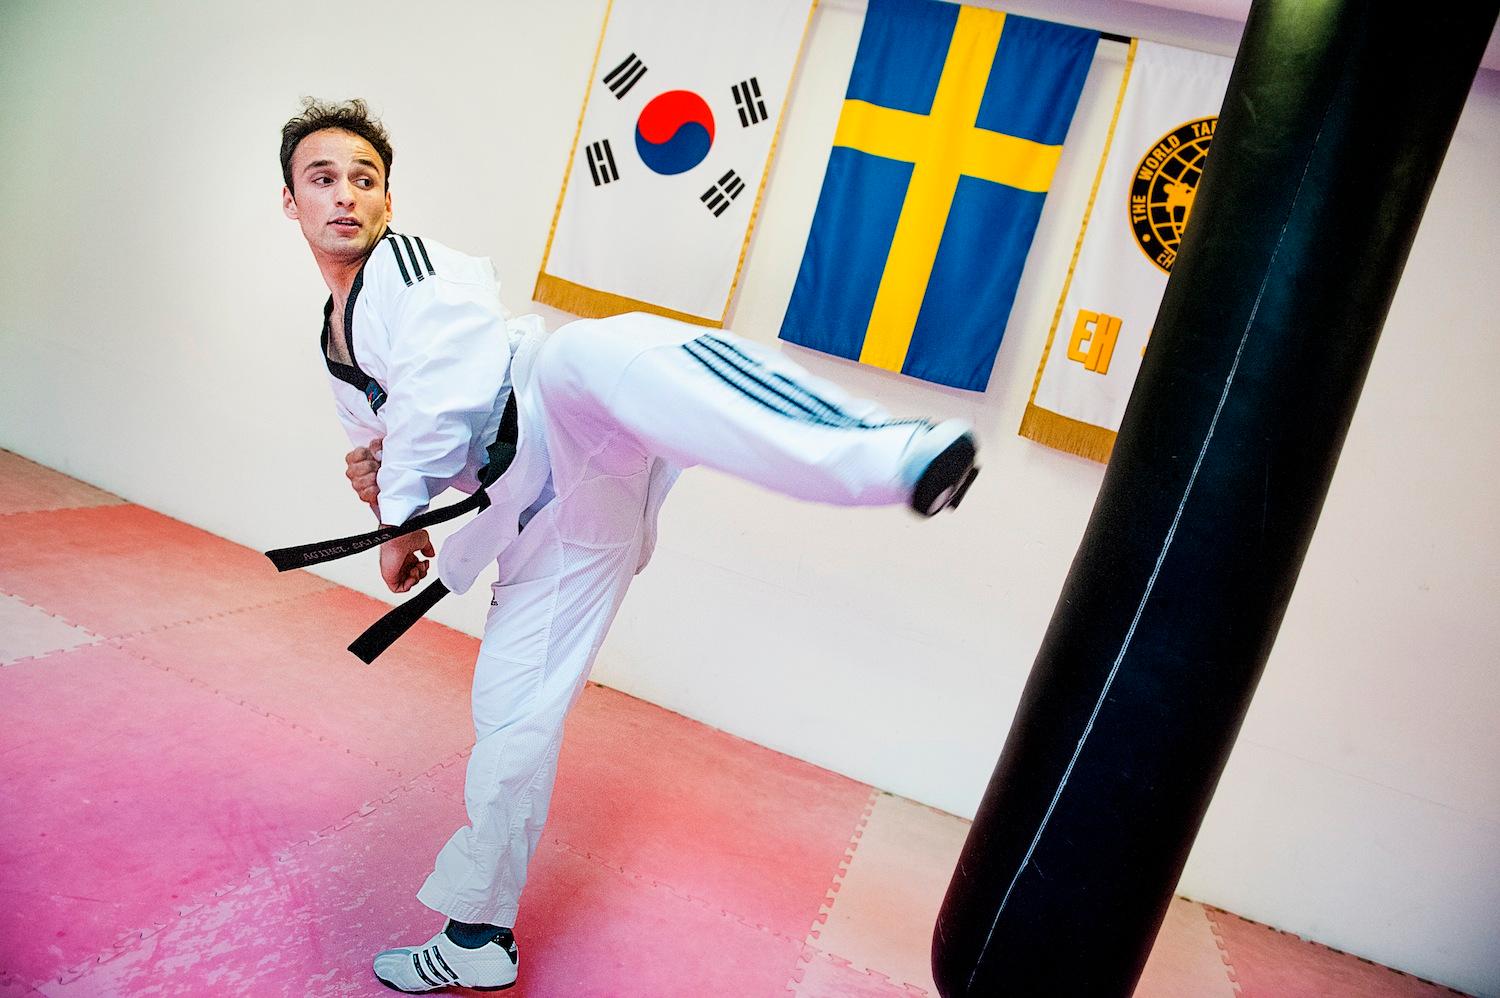 Taekwondostjärnan Fardin Habibi kom till Sverige som ensamkommande flyktingbarn för tre år sedan. Då var han 15 år. Nu siktar han på VM och OS.